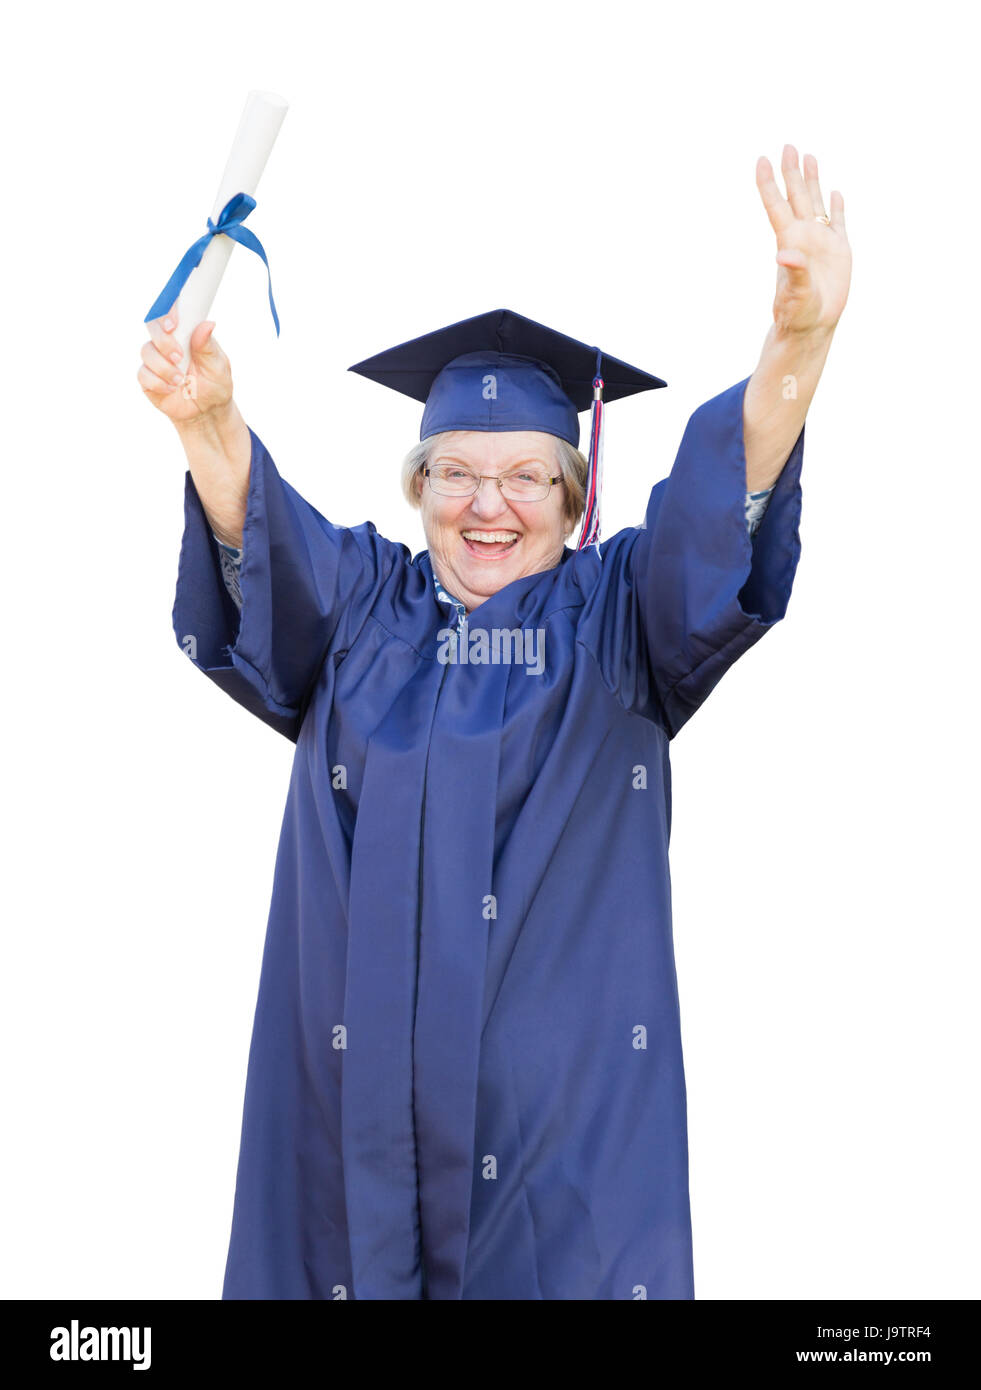 Glücklich Senior Erwachsene Frau Dipl.-Mütze und Mantel mit Diplom, Isolated on White Background. Stockfoto